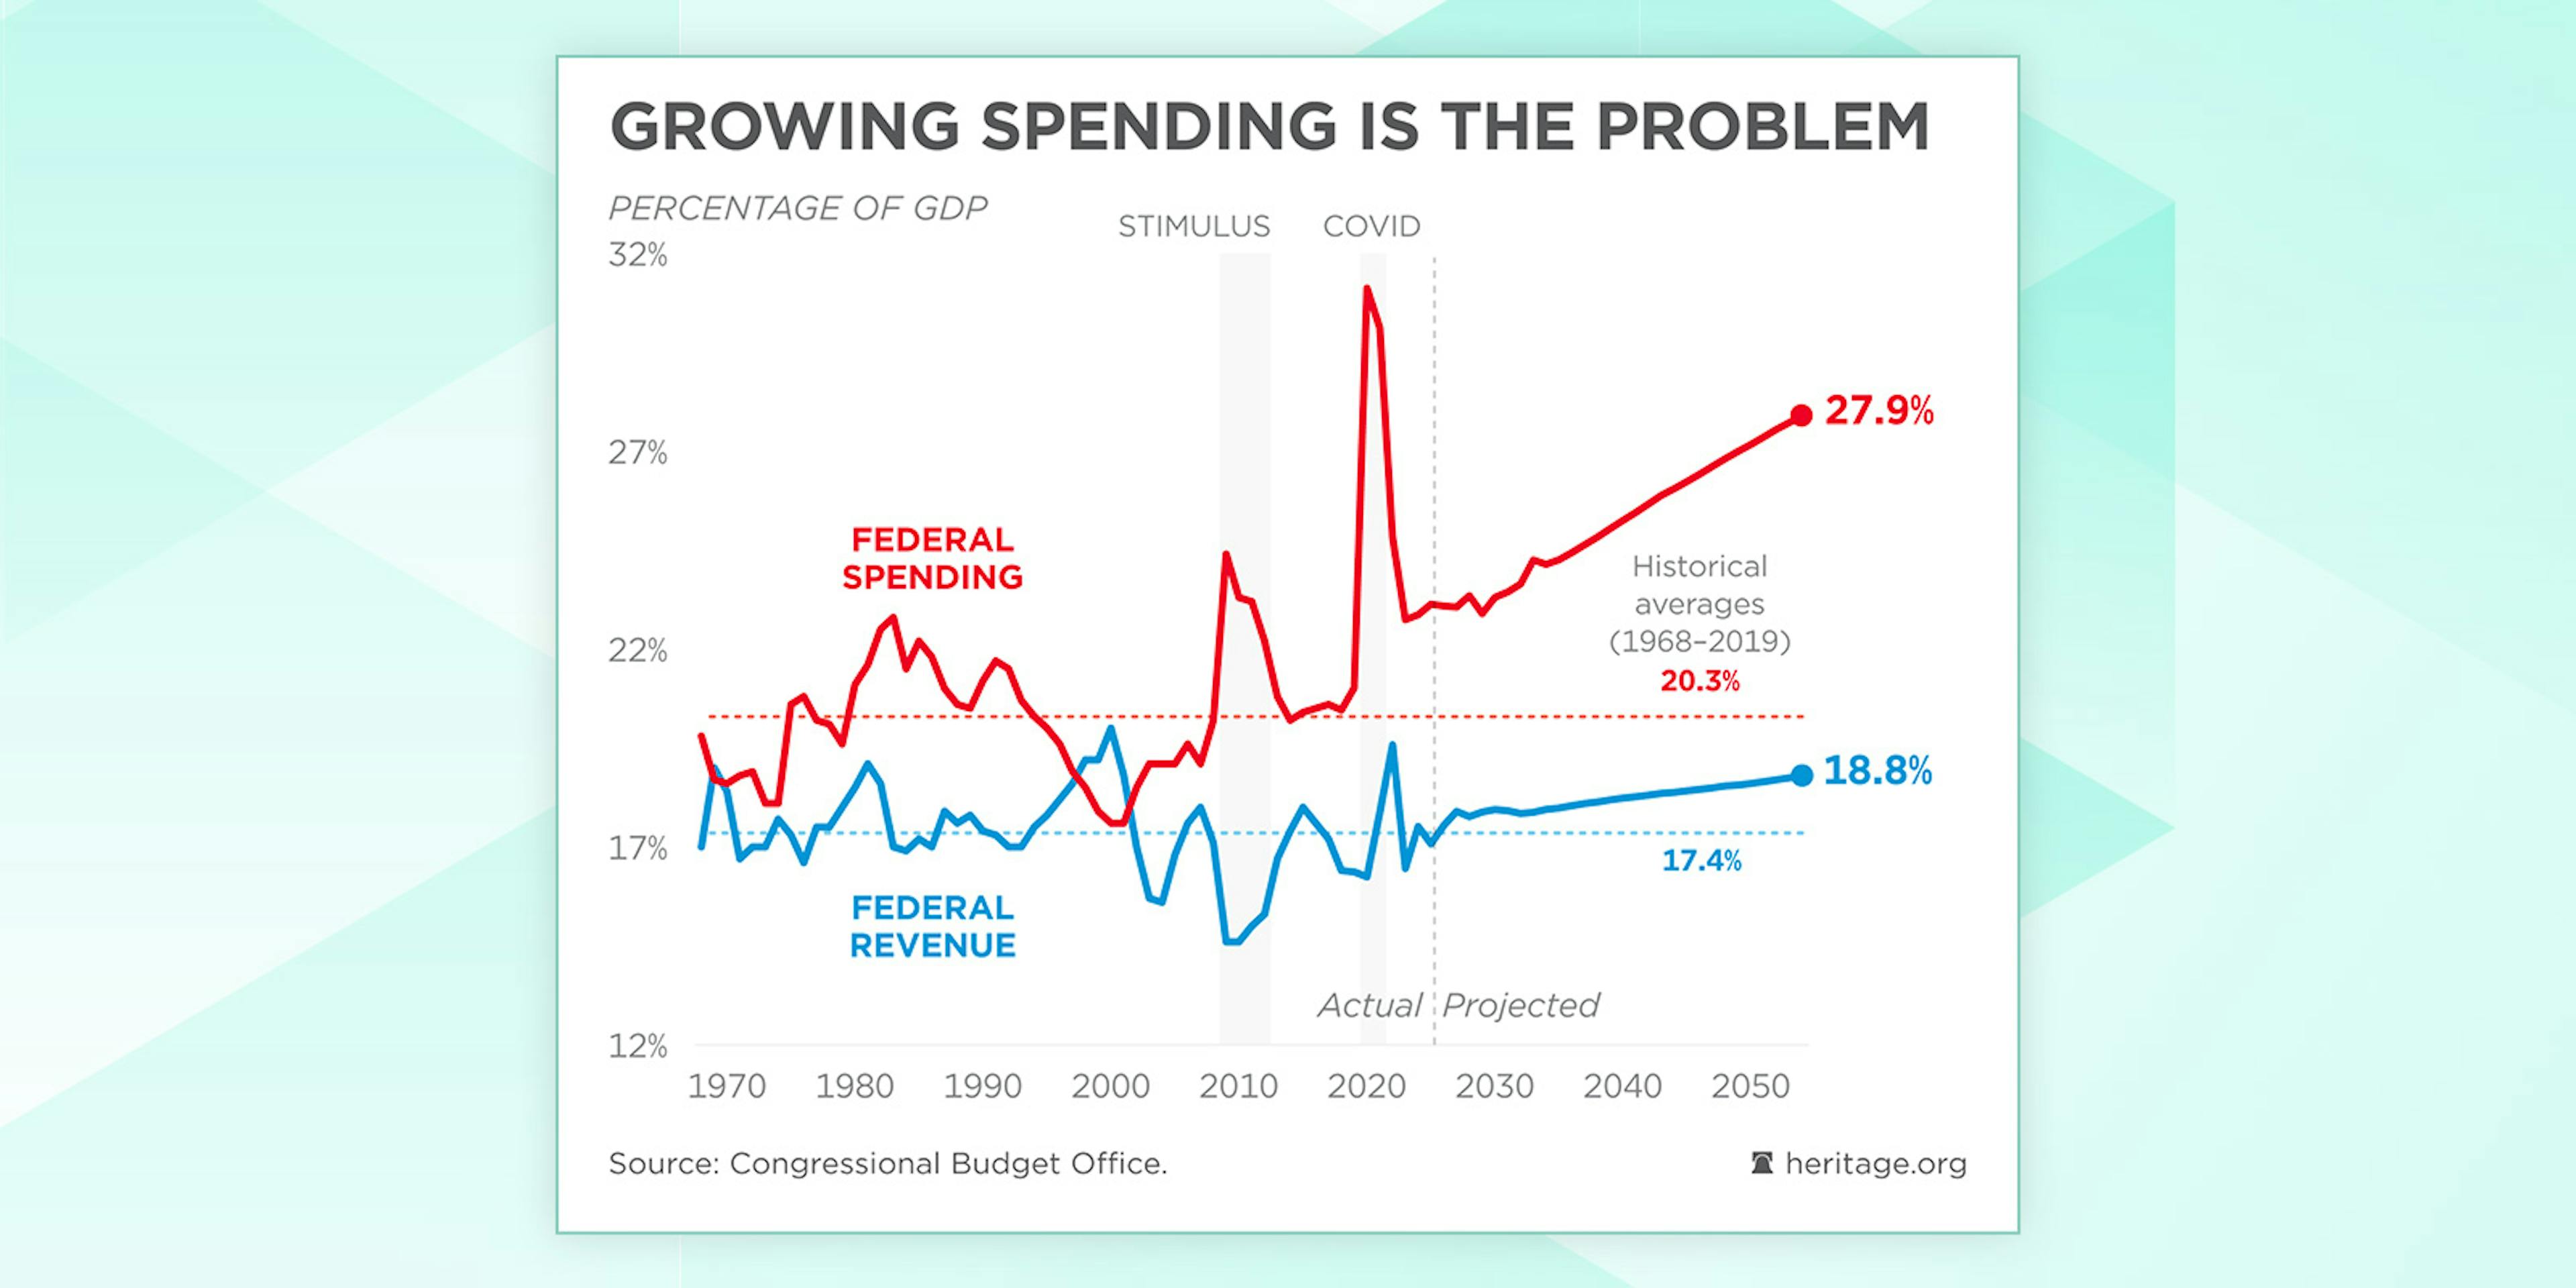 L'augmentation des dépenses est le problème